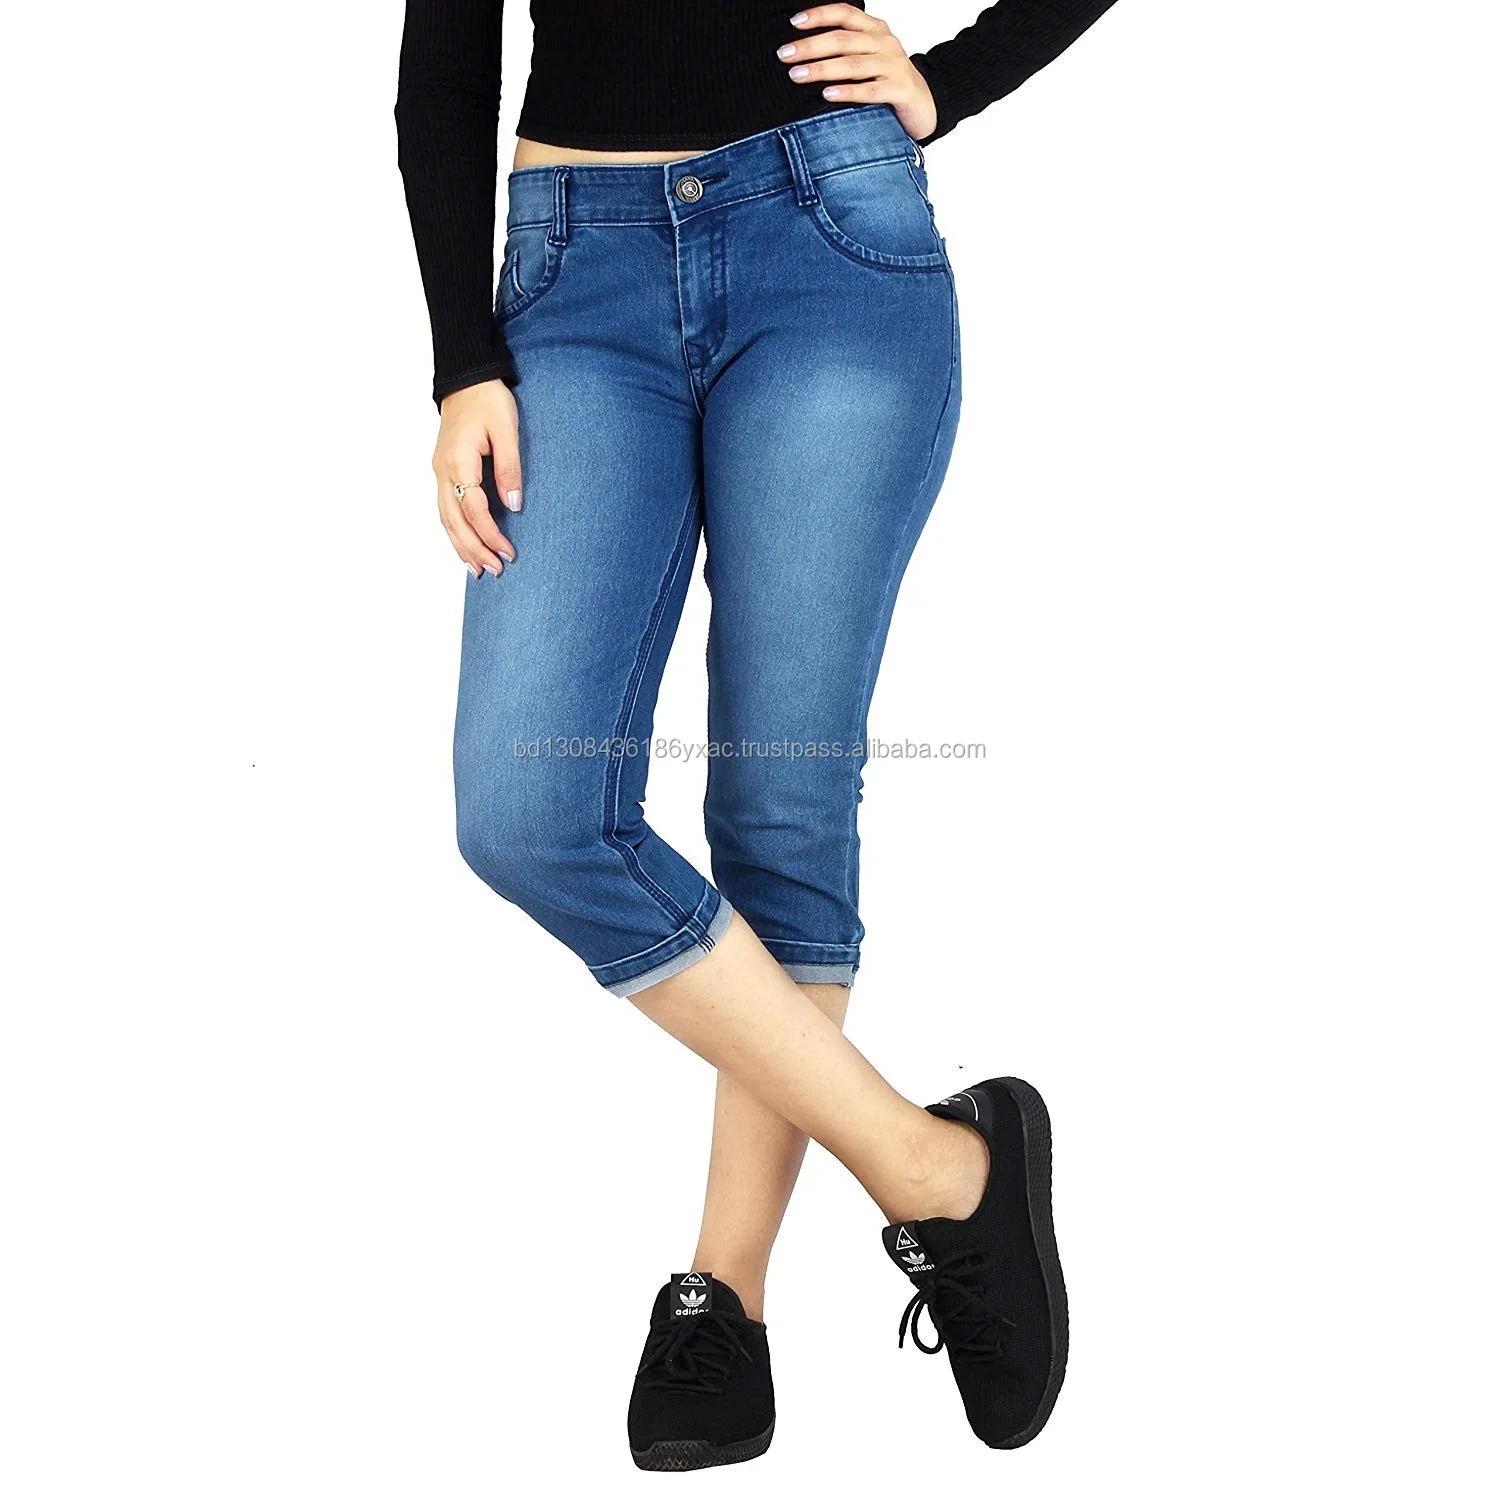 3/4 Length Skinny Jeans Ladies Pants 